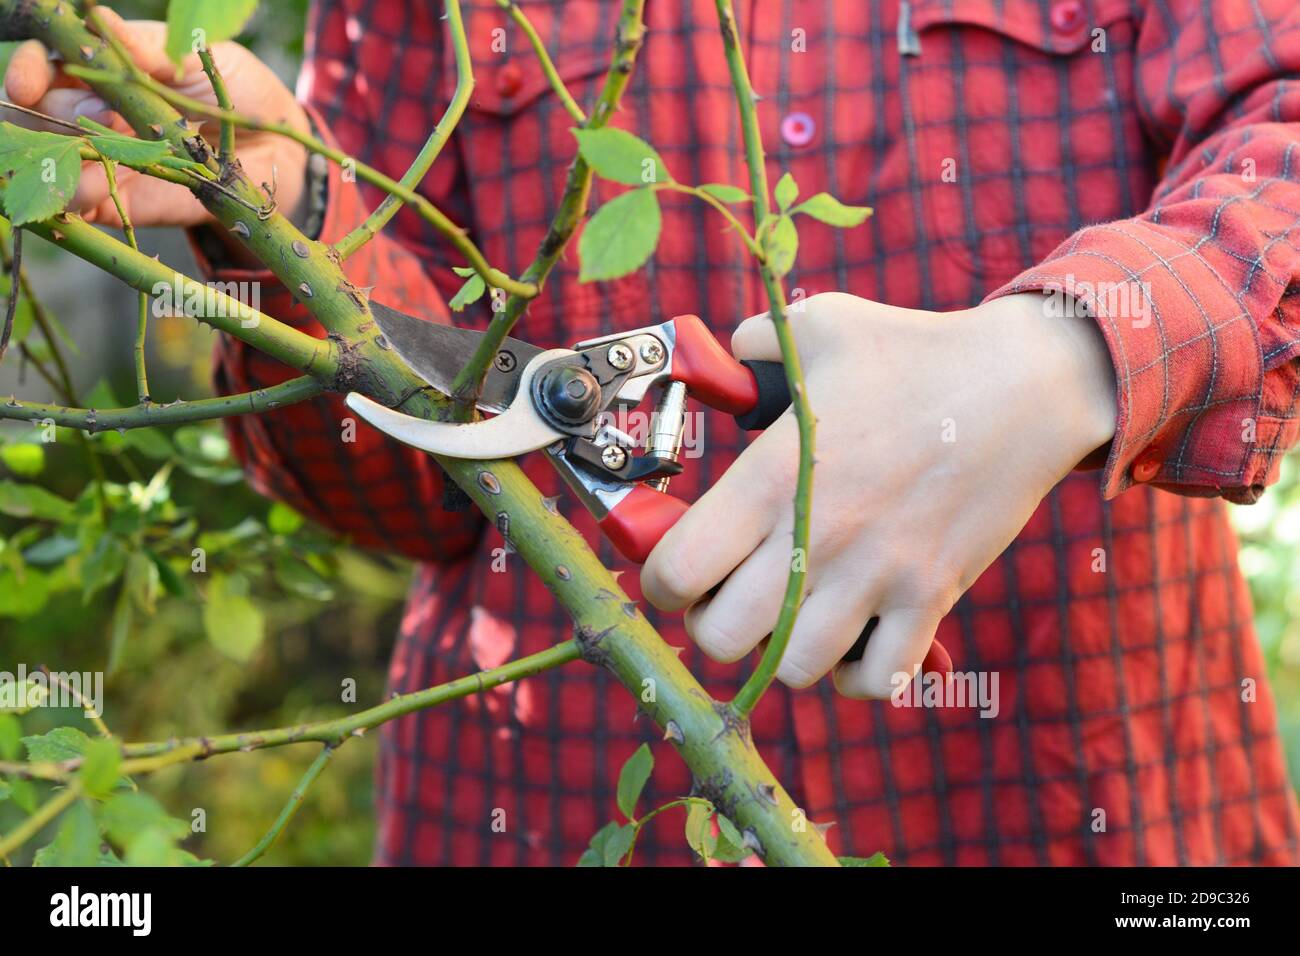 Jardinier pruner grimpant rosier buisson. Élagage de roses : rosiers grimpants. Banque D'Images